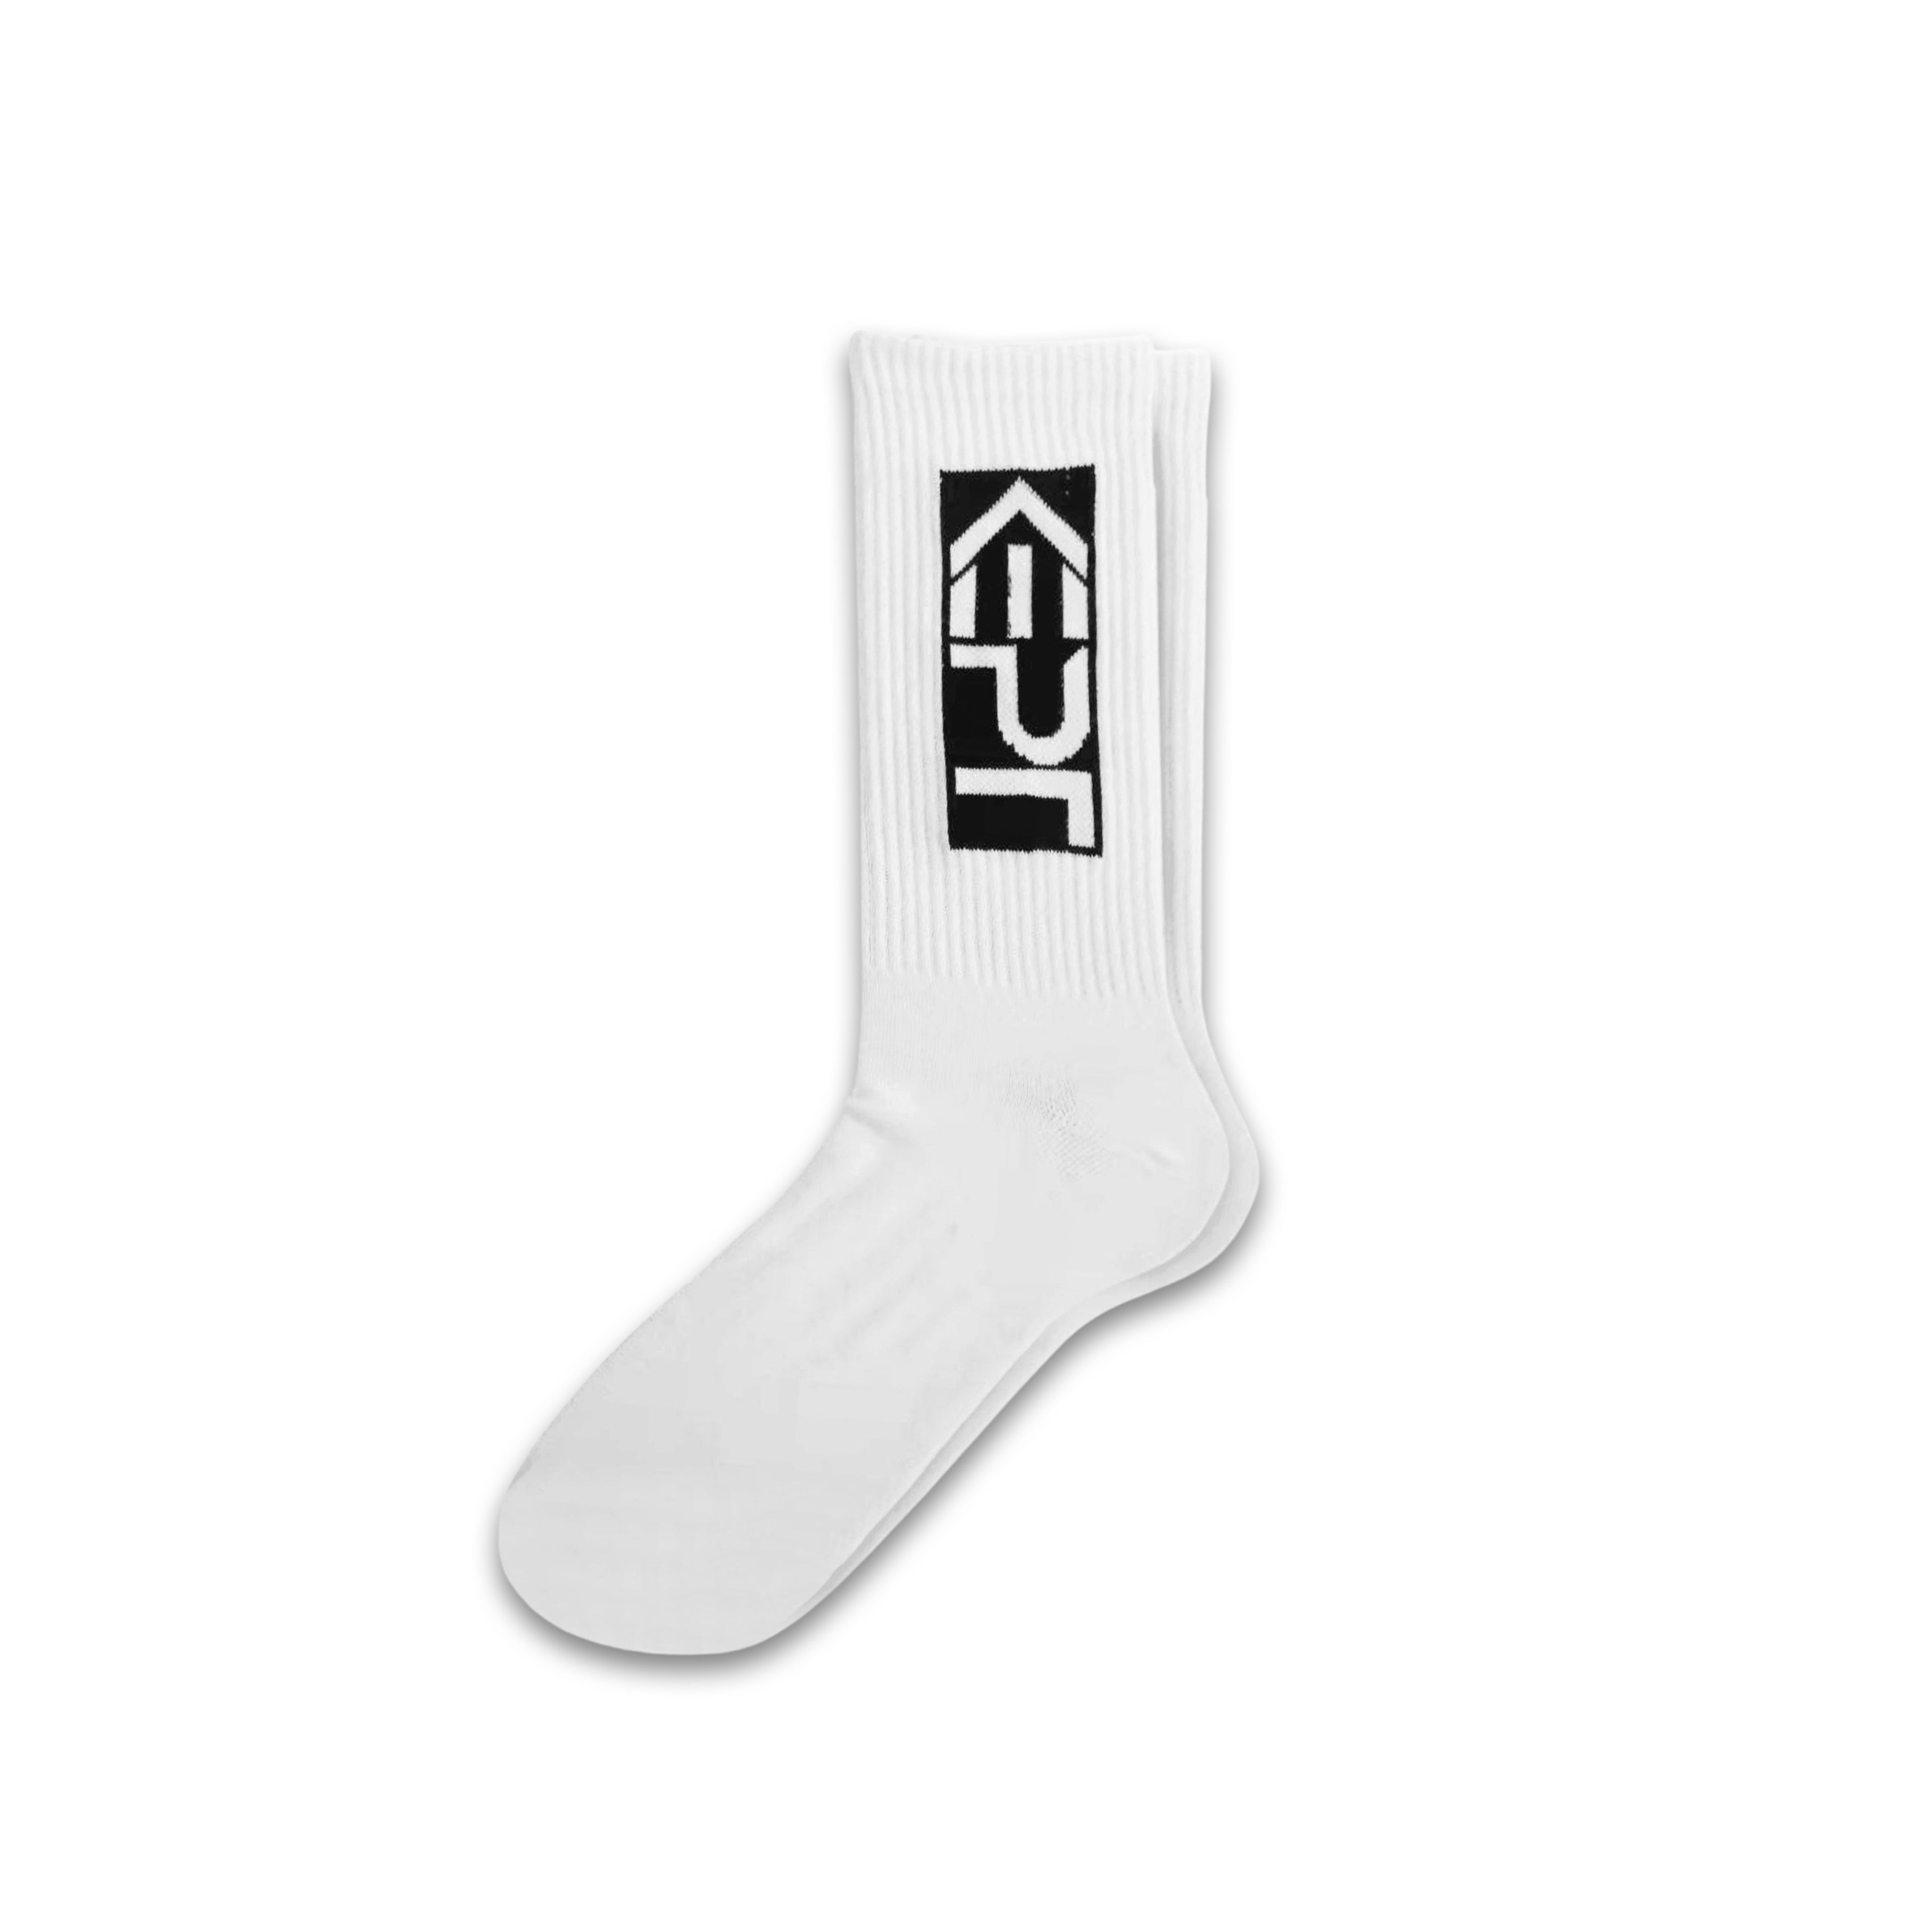 White socks with the KEPT logo.